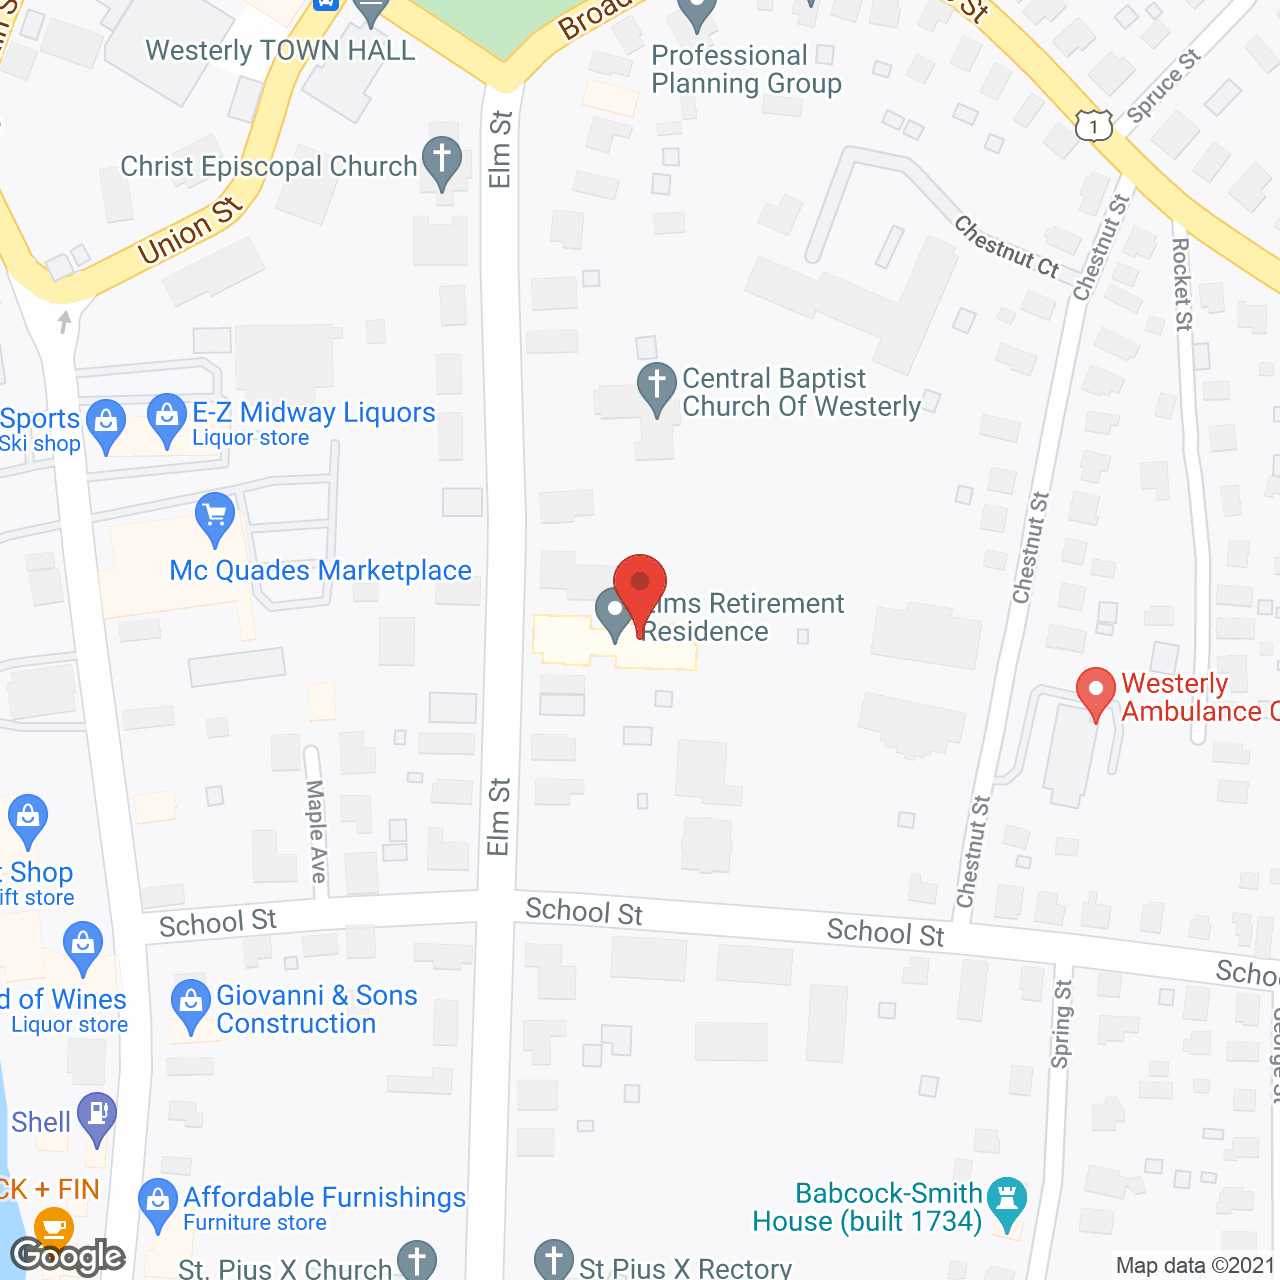 The Elms Retirement Residence in google map